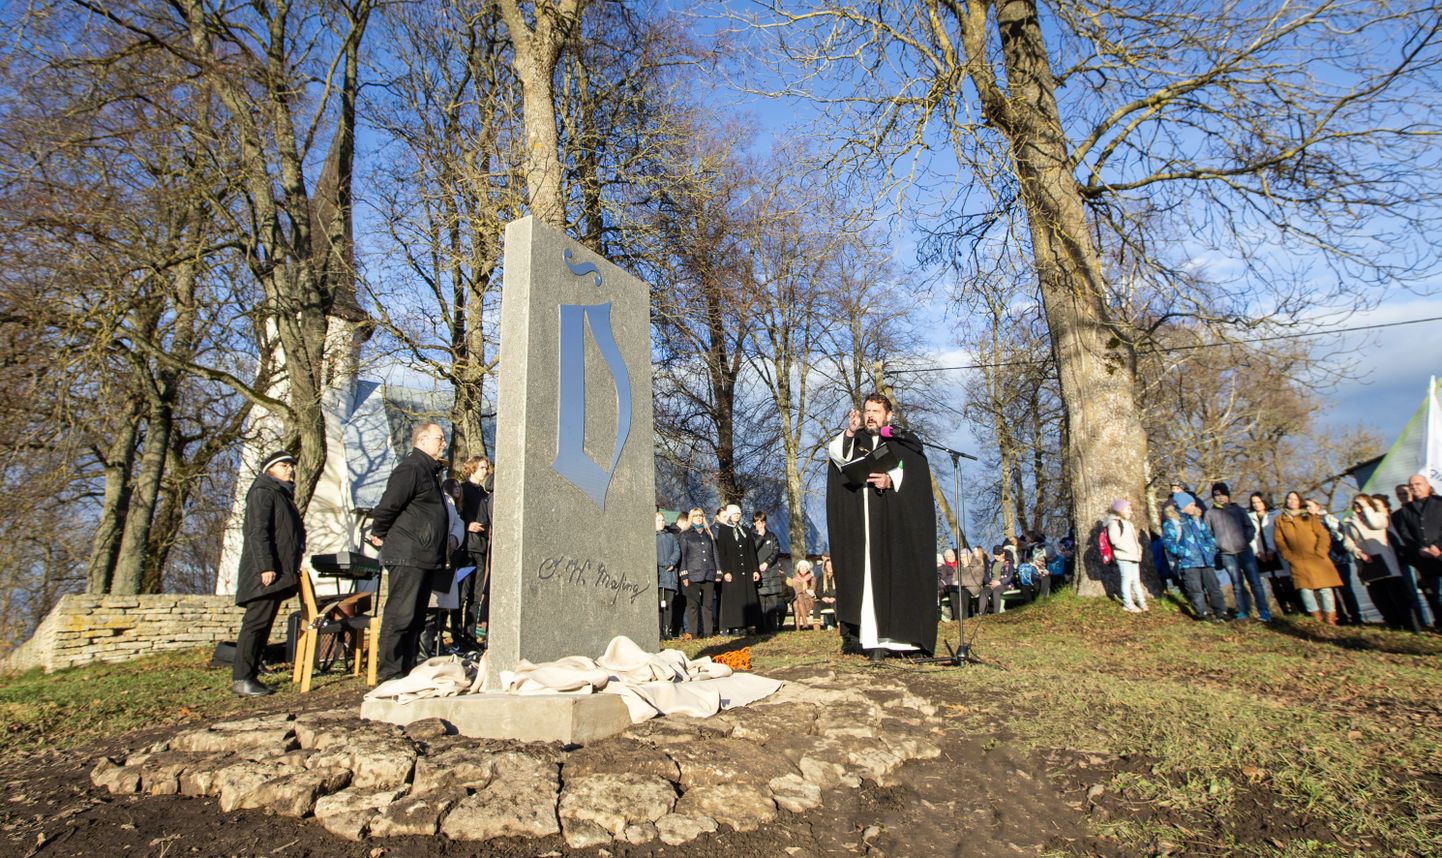 "Этот памятный знак - не просто камень и металл, а символ нашей благодарности и уважения", - сказал Ульвар Куллеркупп, открывая памятник.